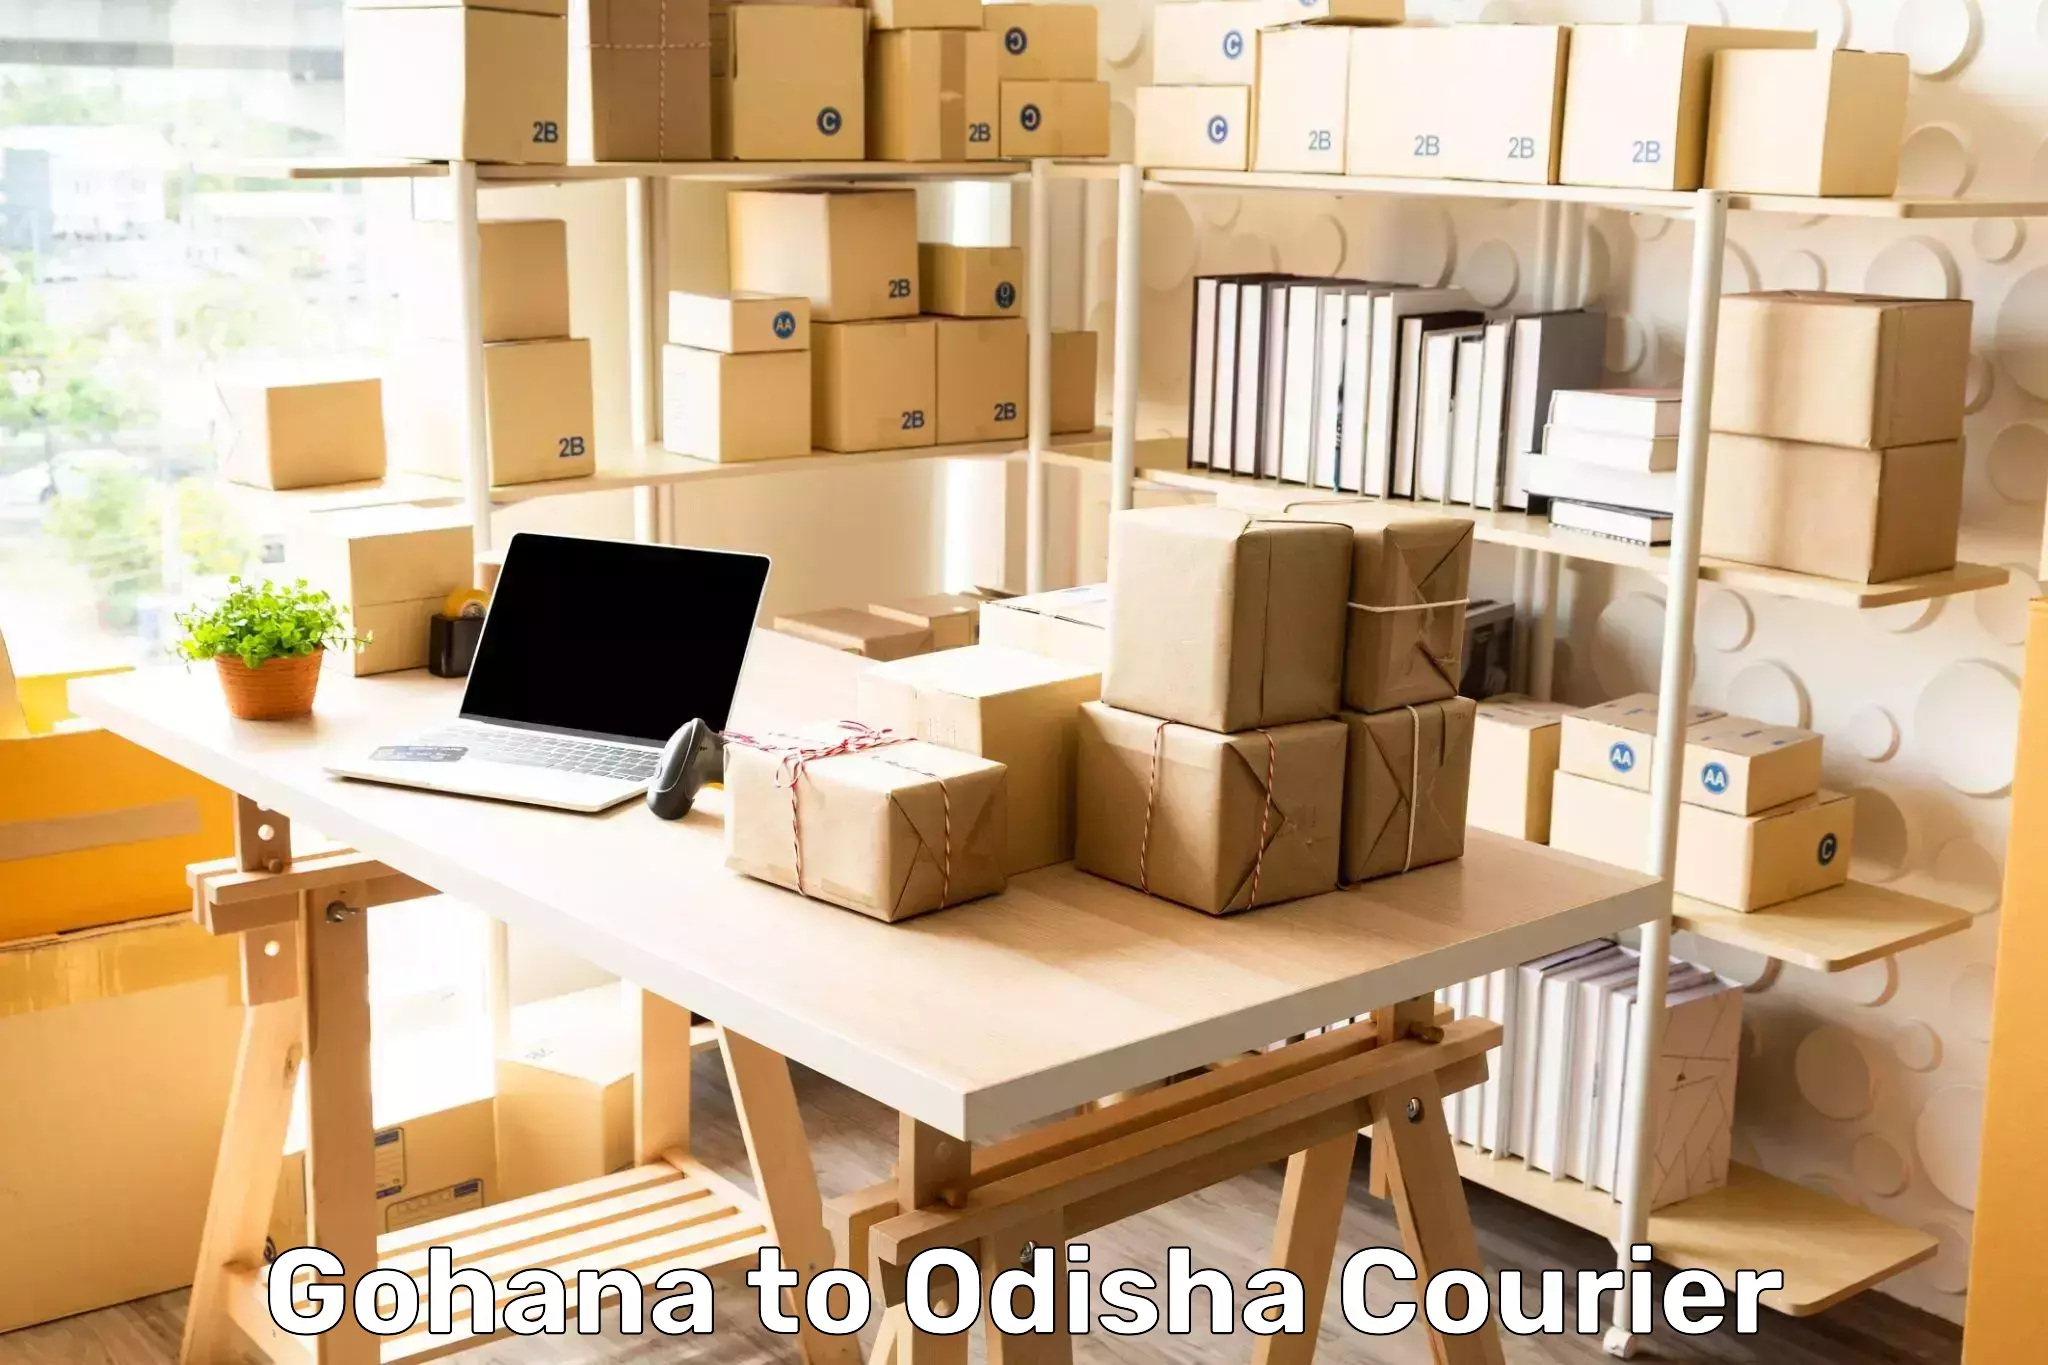 Next day courier Gohana to Odisha